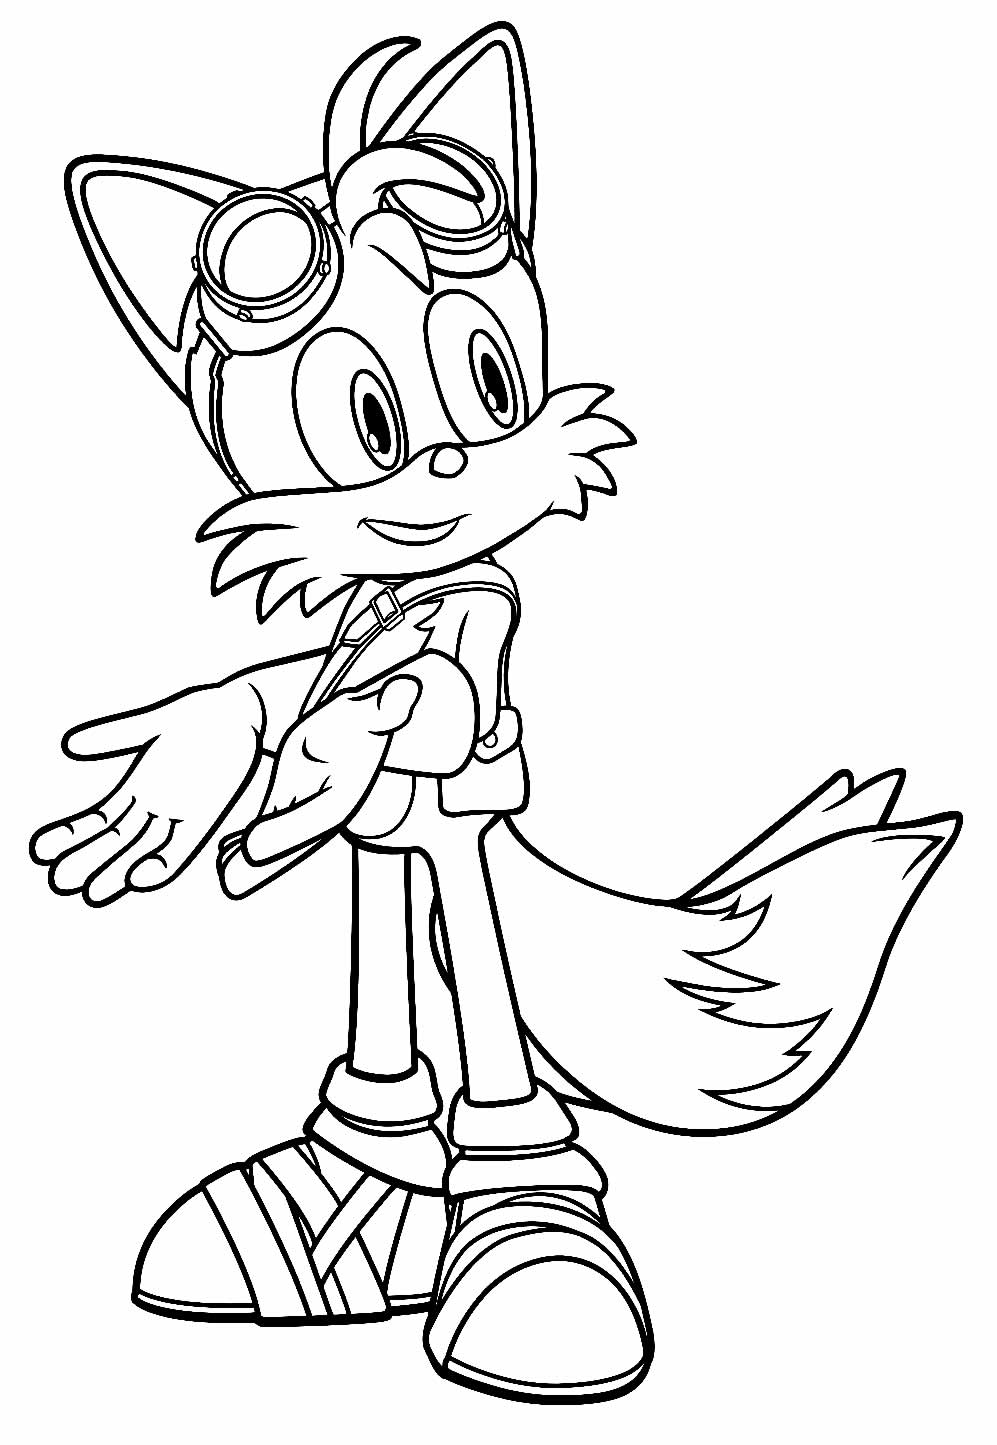 Desenhos de Tails de Sonic para Colorir e Imprimir 